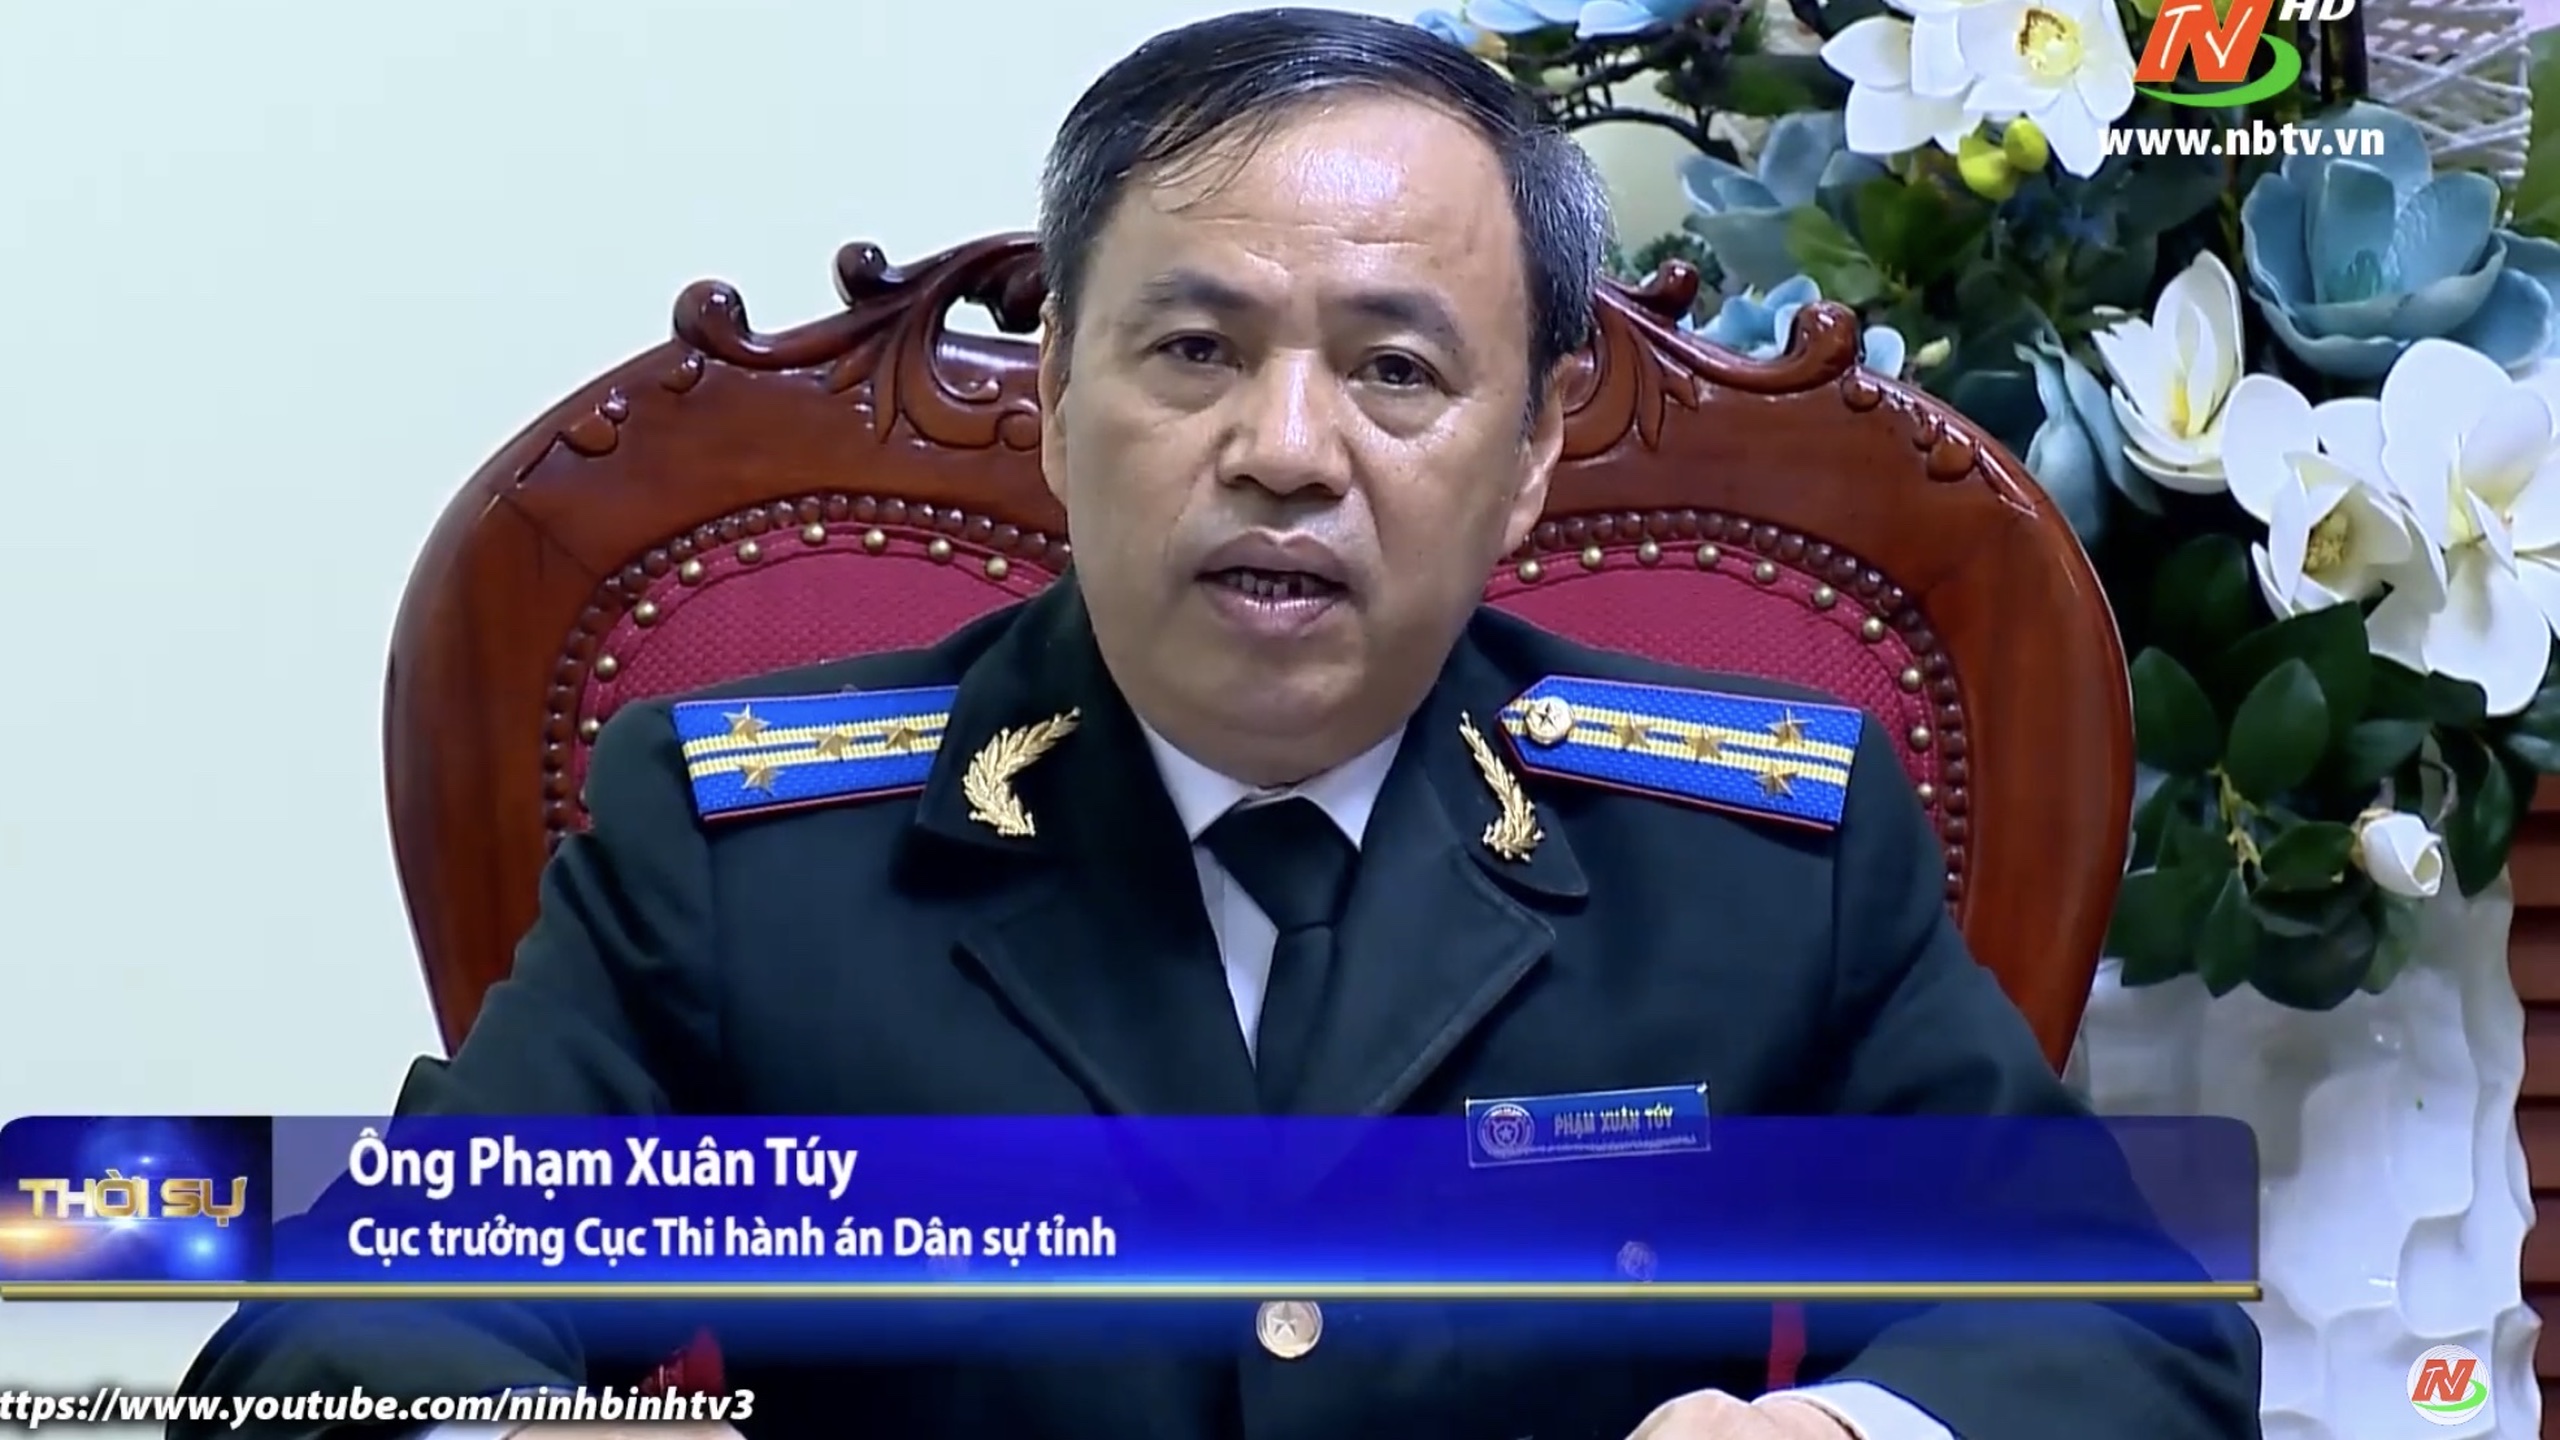 Cục Thi hành án dân sự tỉnh Ninh Bình đã có thành tích xuất sắc trong việc thực hiện nhiệm vụ Hội Đồng Nhân Dân các cấp nhiệm kỳ 2021-2026